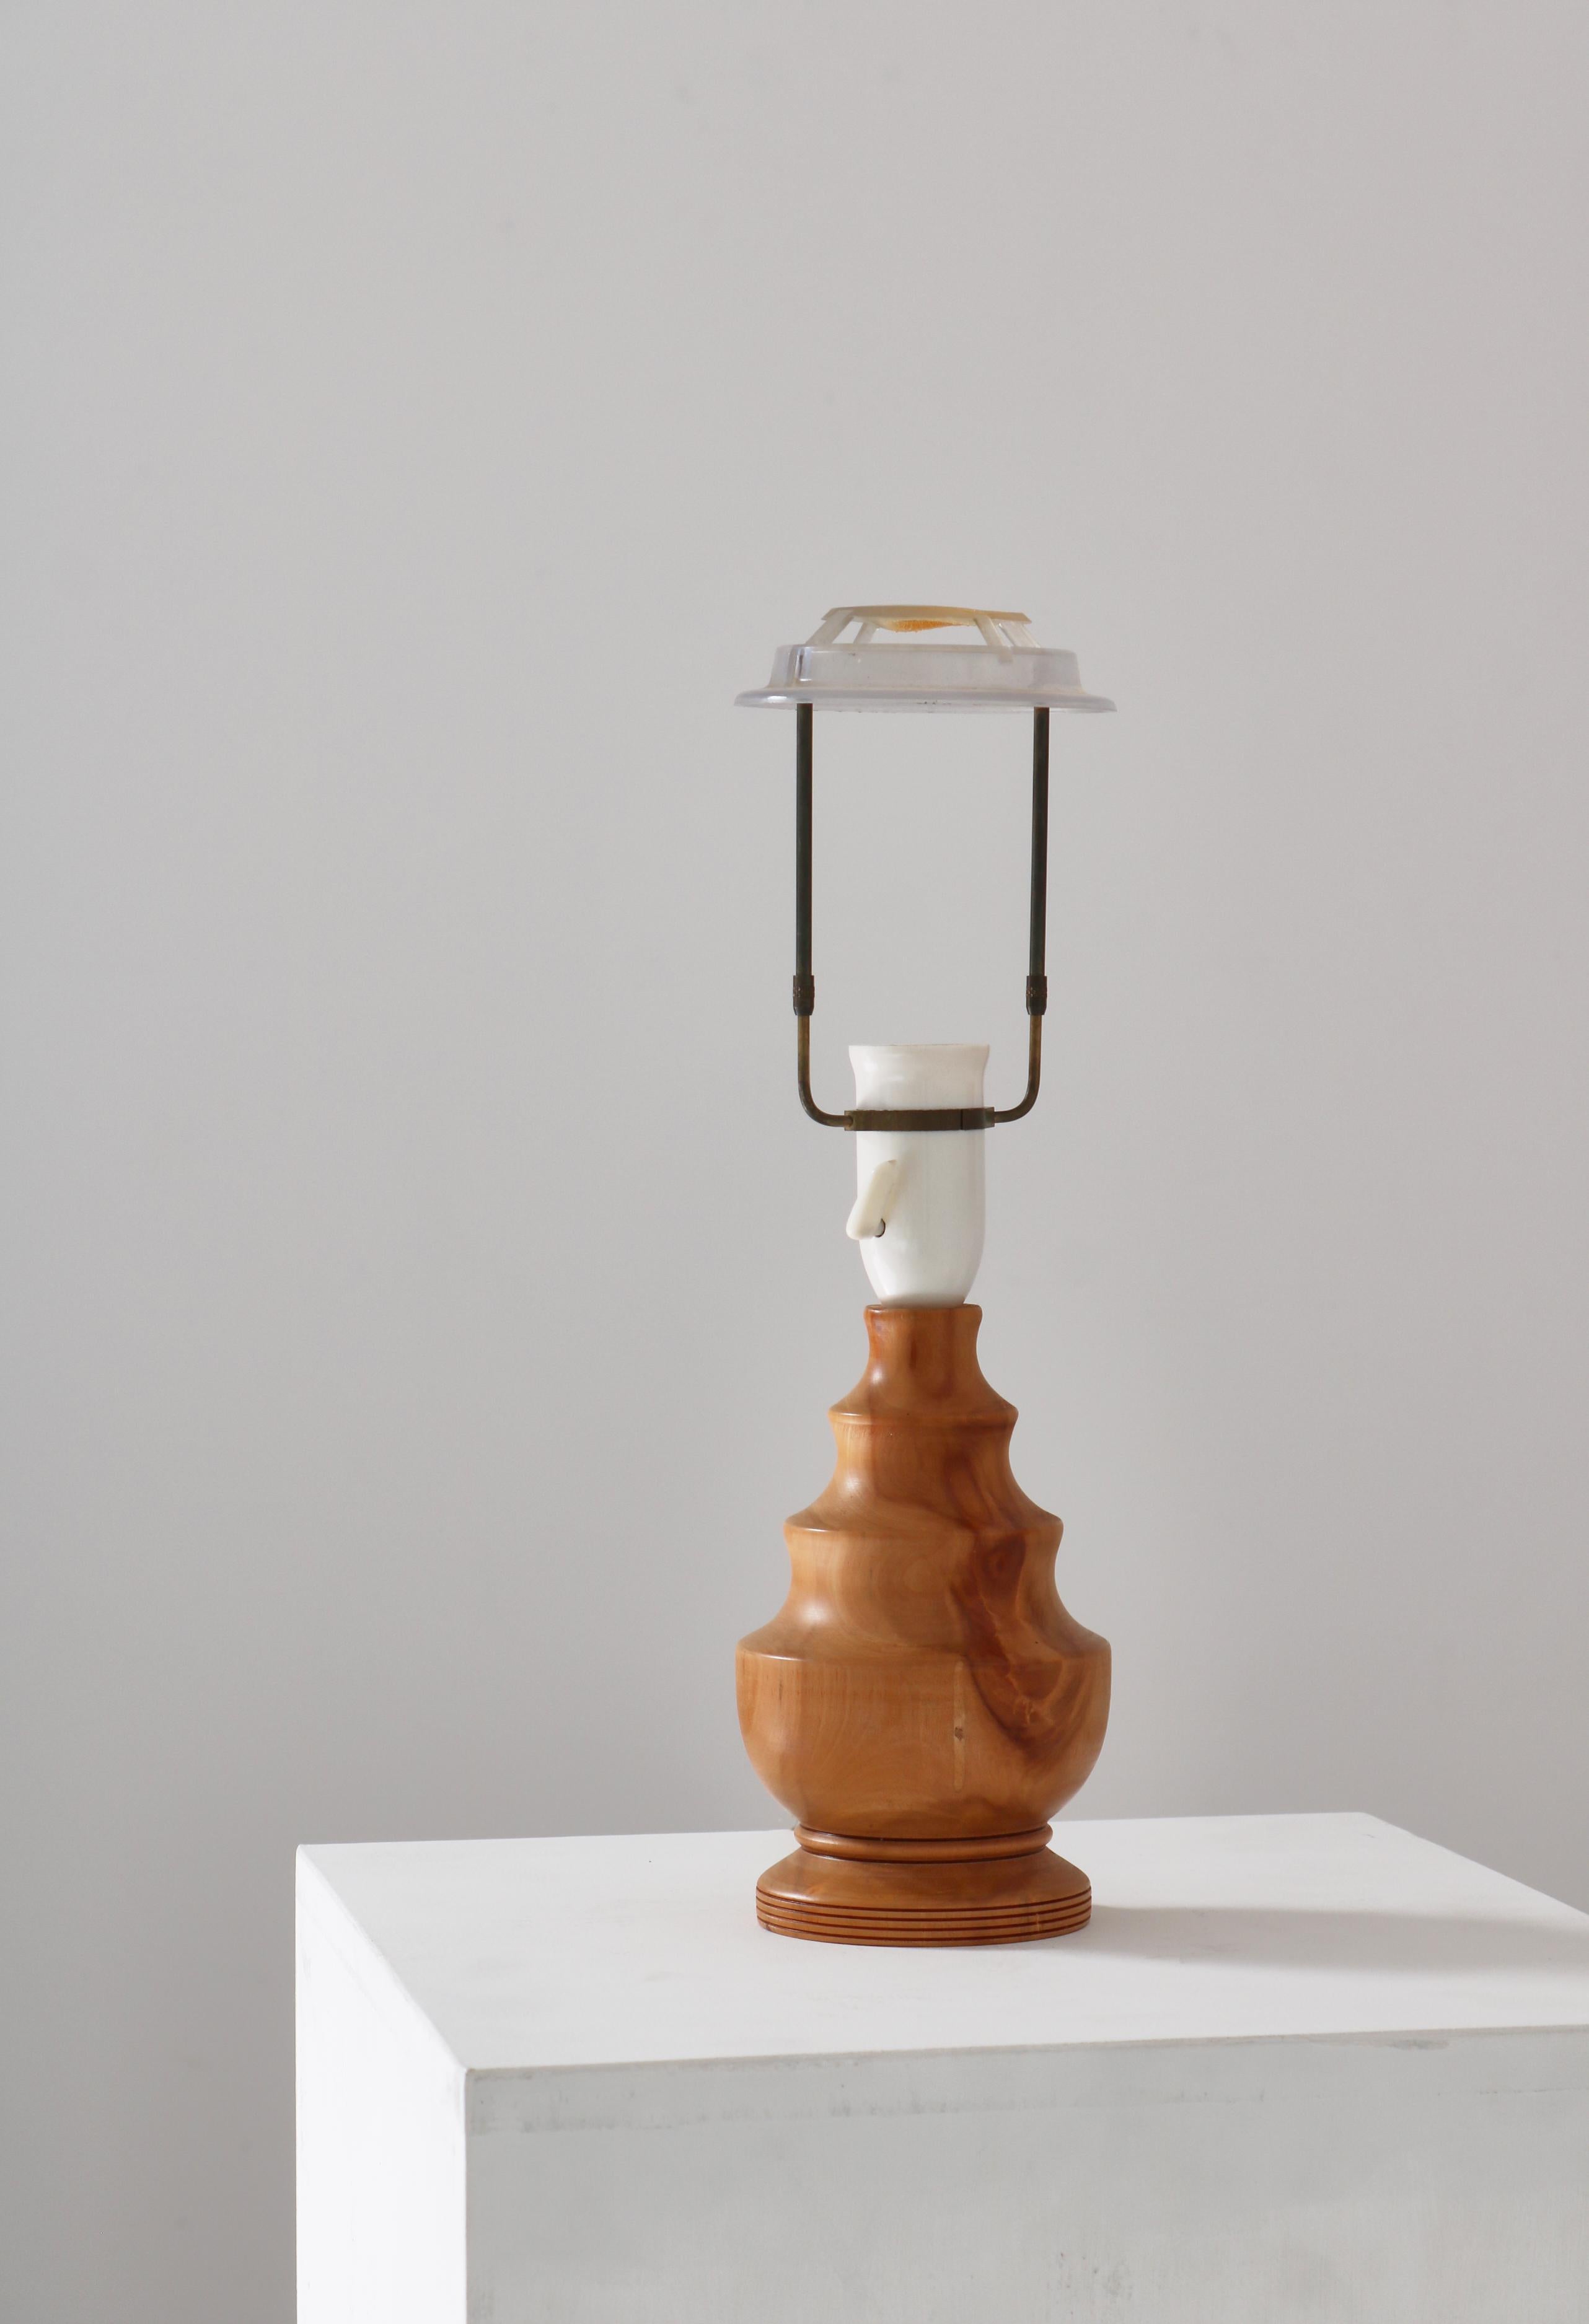 Antique Scandinavian Turned Wooden Table Lamp Handmade in Denmark, 1940s For Sale 3